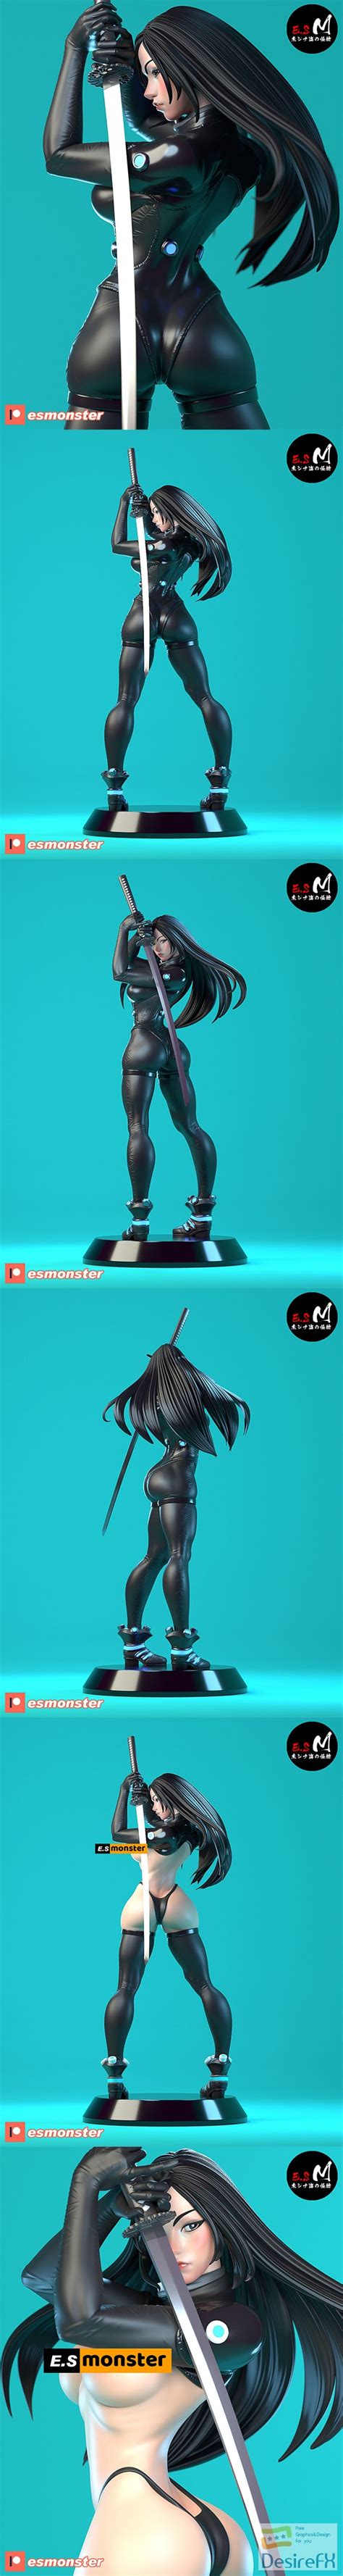 Download E.S Monster – Reika Shimohira – 3D Print - DesireFX.COM